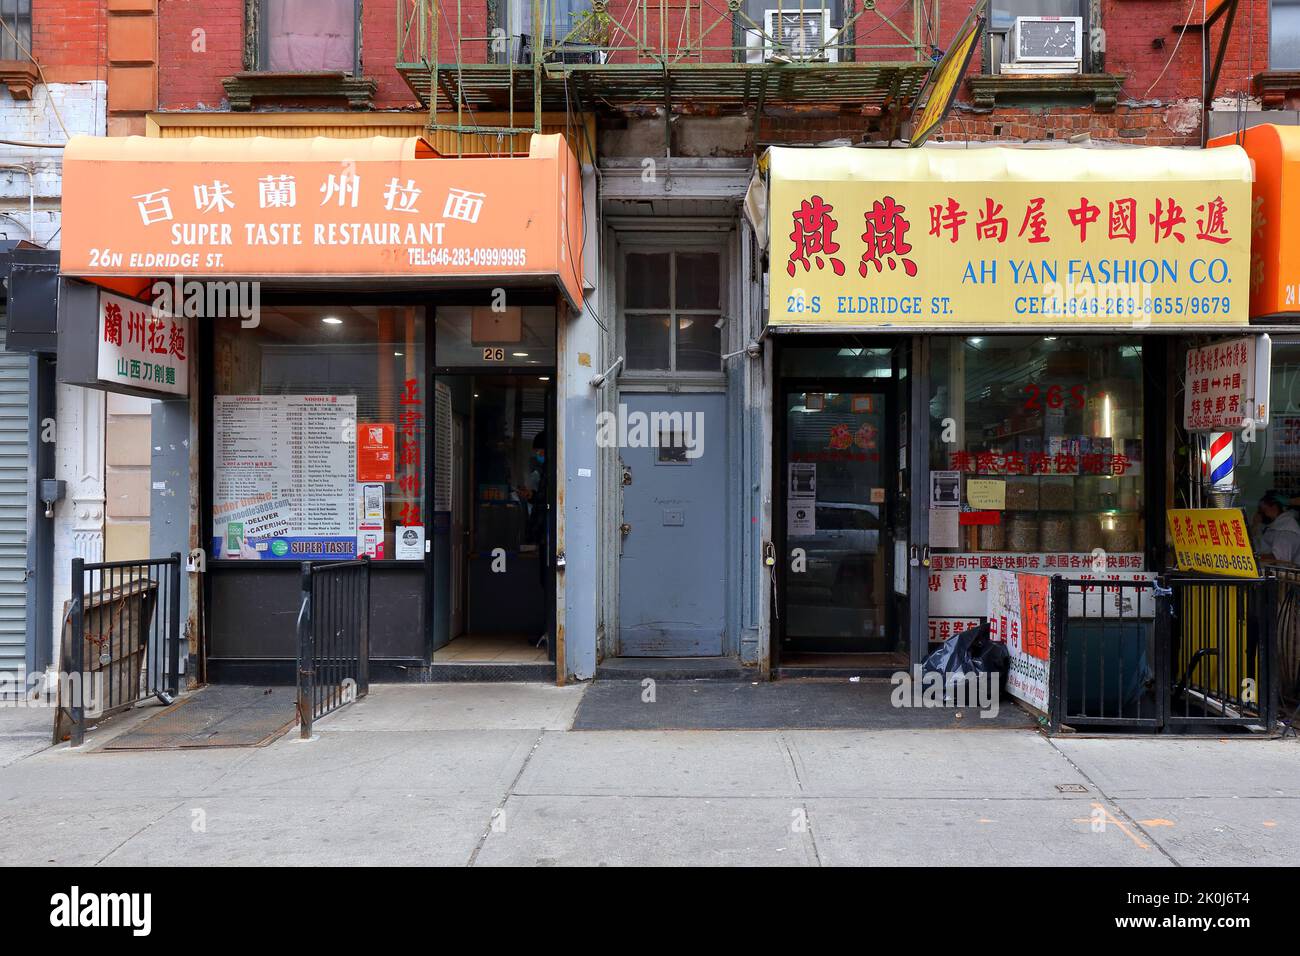 Super Taste Restaurant 百味蘭州拉面, 26 Eldridge St, New York, NYC Schaufensterfoto eines handgezogenen Nudelrestaurants in Lanzhou in Manhattan, Chinatown. Stockfoto